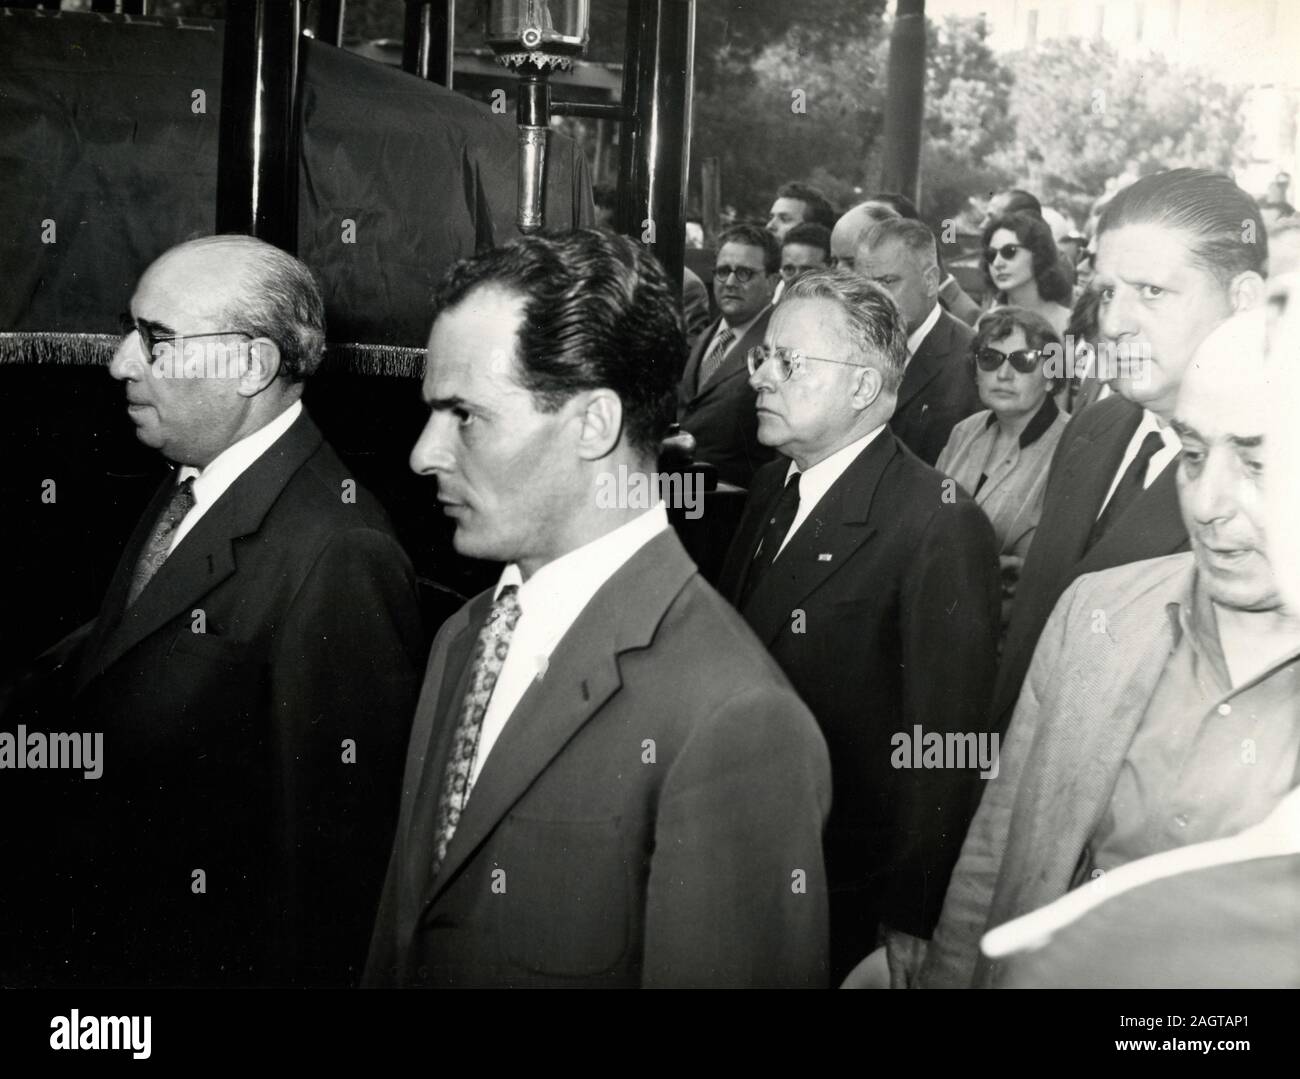 Les politiciens italiens Mauro Scoccimarro, Otello Nannuzzi, Palmiro Togliatti, et Giorgio Amendola au sénateur Ruggero Grieco, Italie 1955 Banque D'Images